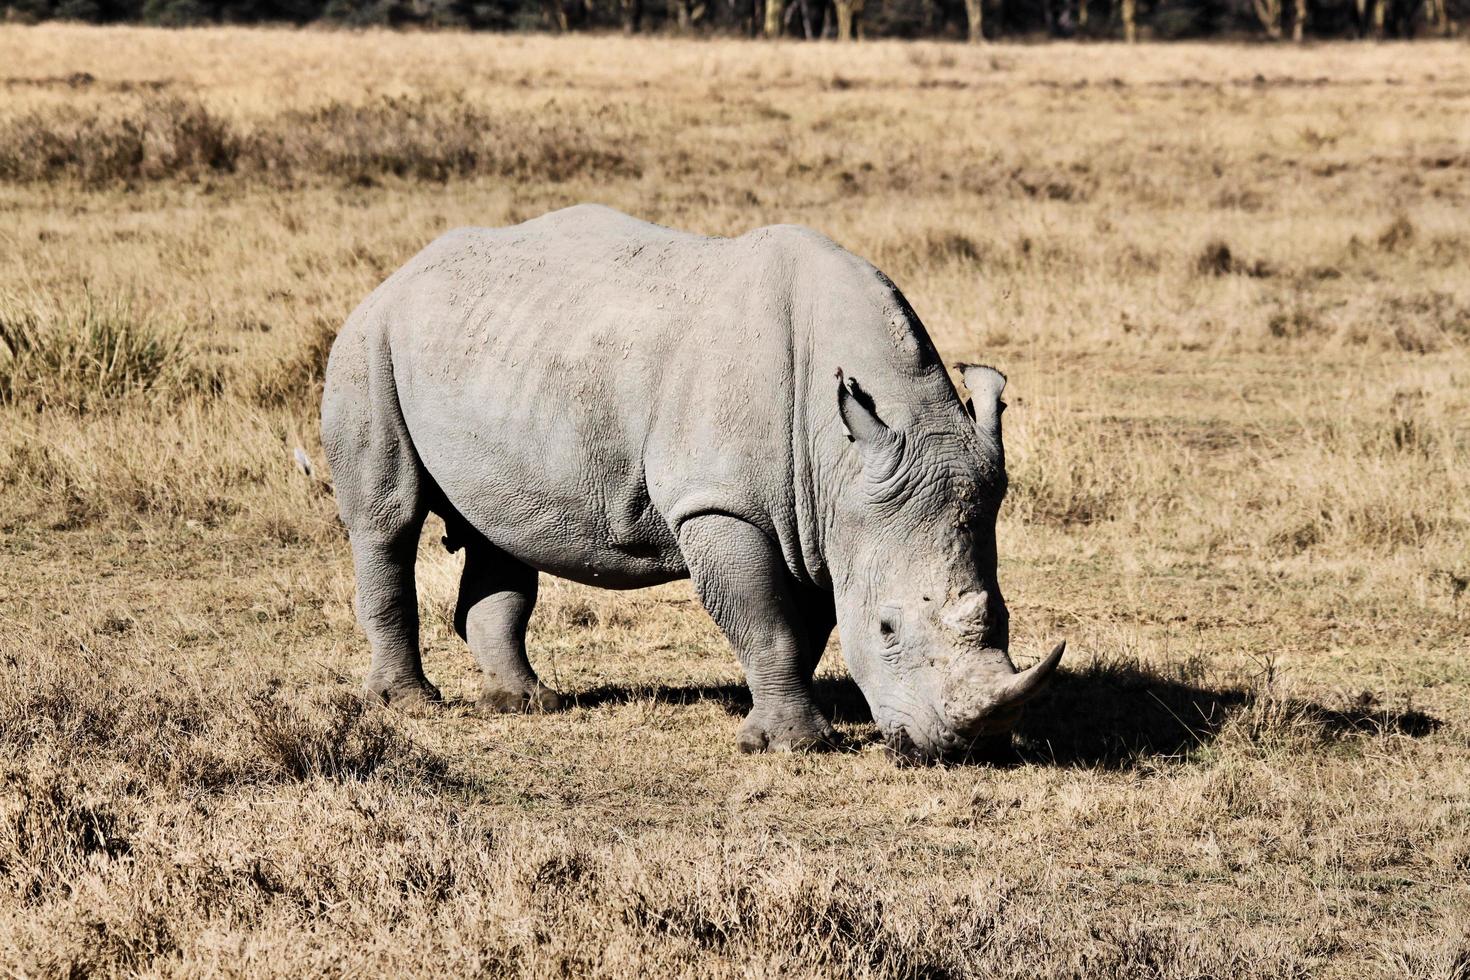 um close-up de um rinoceronte foto